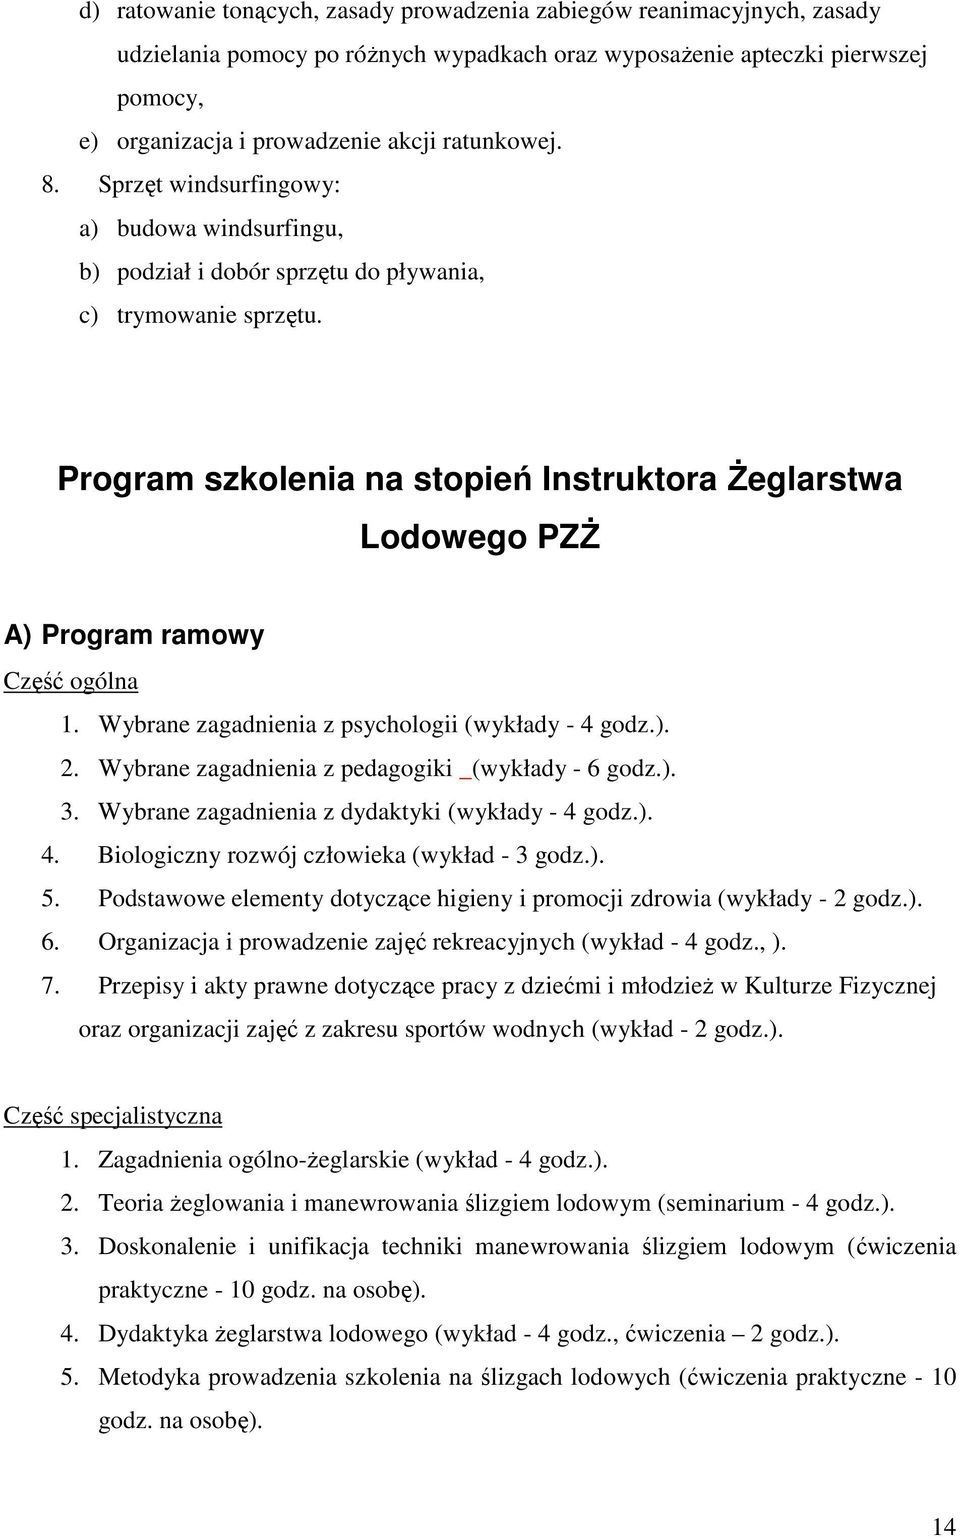 Program szkolenia na stopień Instruktora śeglarstwa Lodowego PZś A) Program ramowy Część ogólna 1. Wybrane zagadnienia z psychologii (wykłady - 4 godz.). 2.